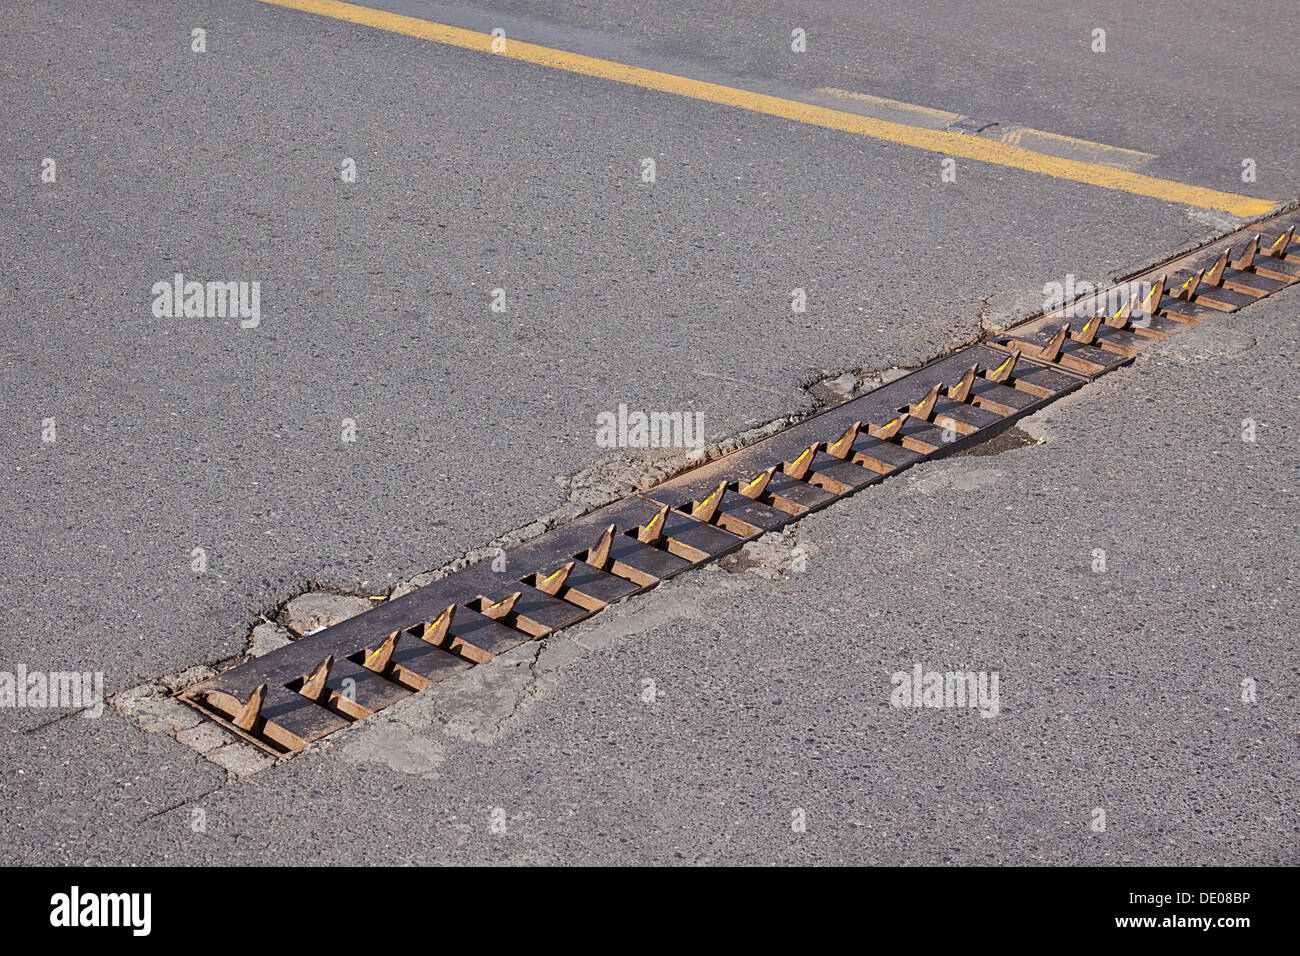 Fest montiert versenkbare Nagel-Sperre, Metall spikes für die Zerstörung  von Autoreifen, Straße, Istanbul, Türkei Stockfotografie - Alamy